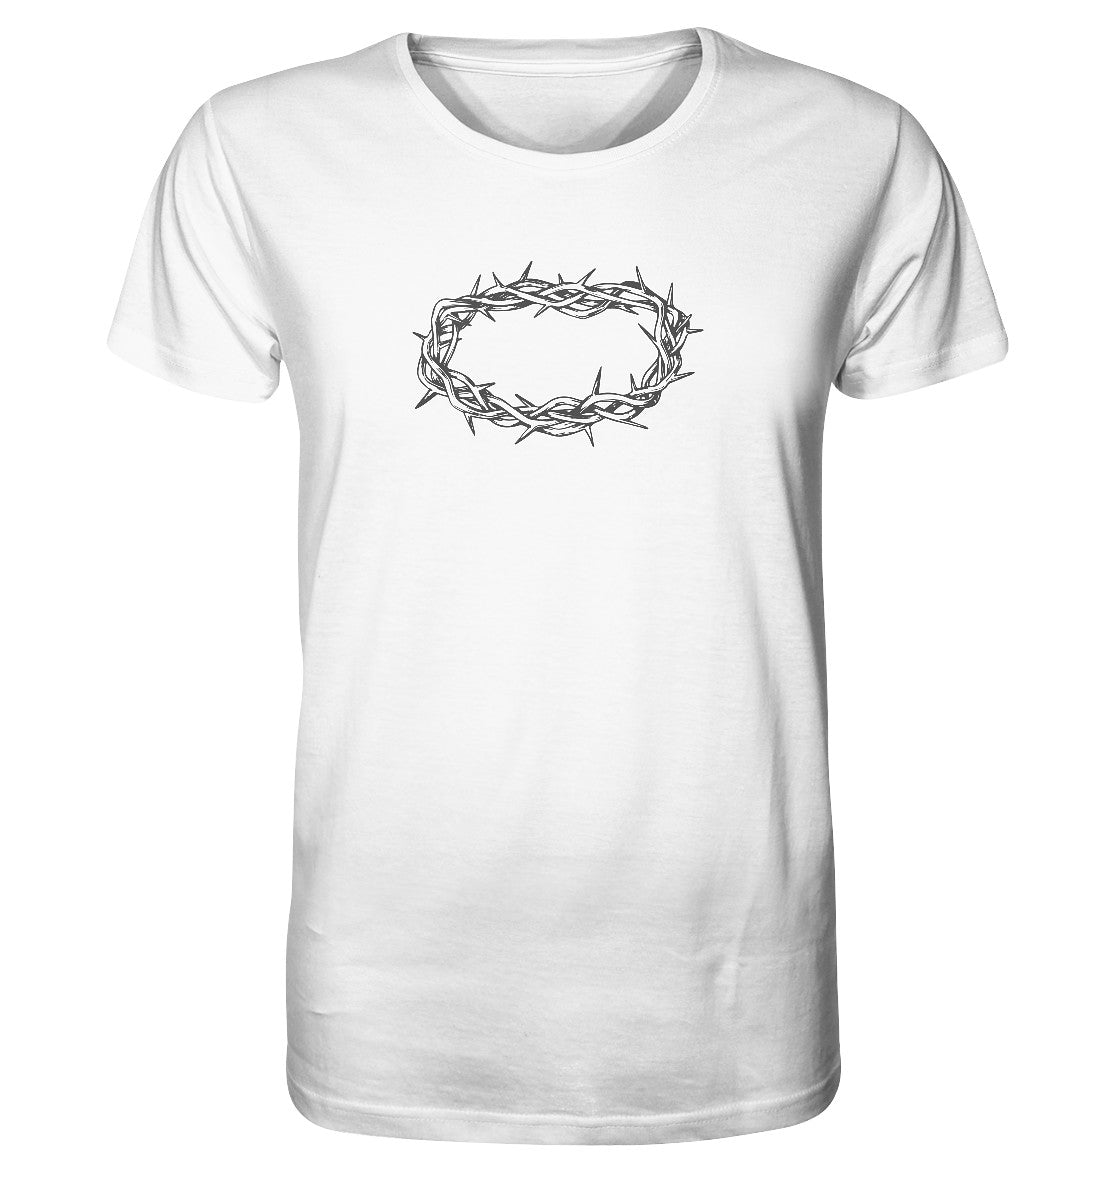 Dornenkrone - Organic Shirt